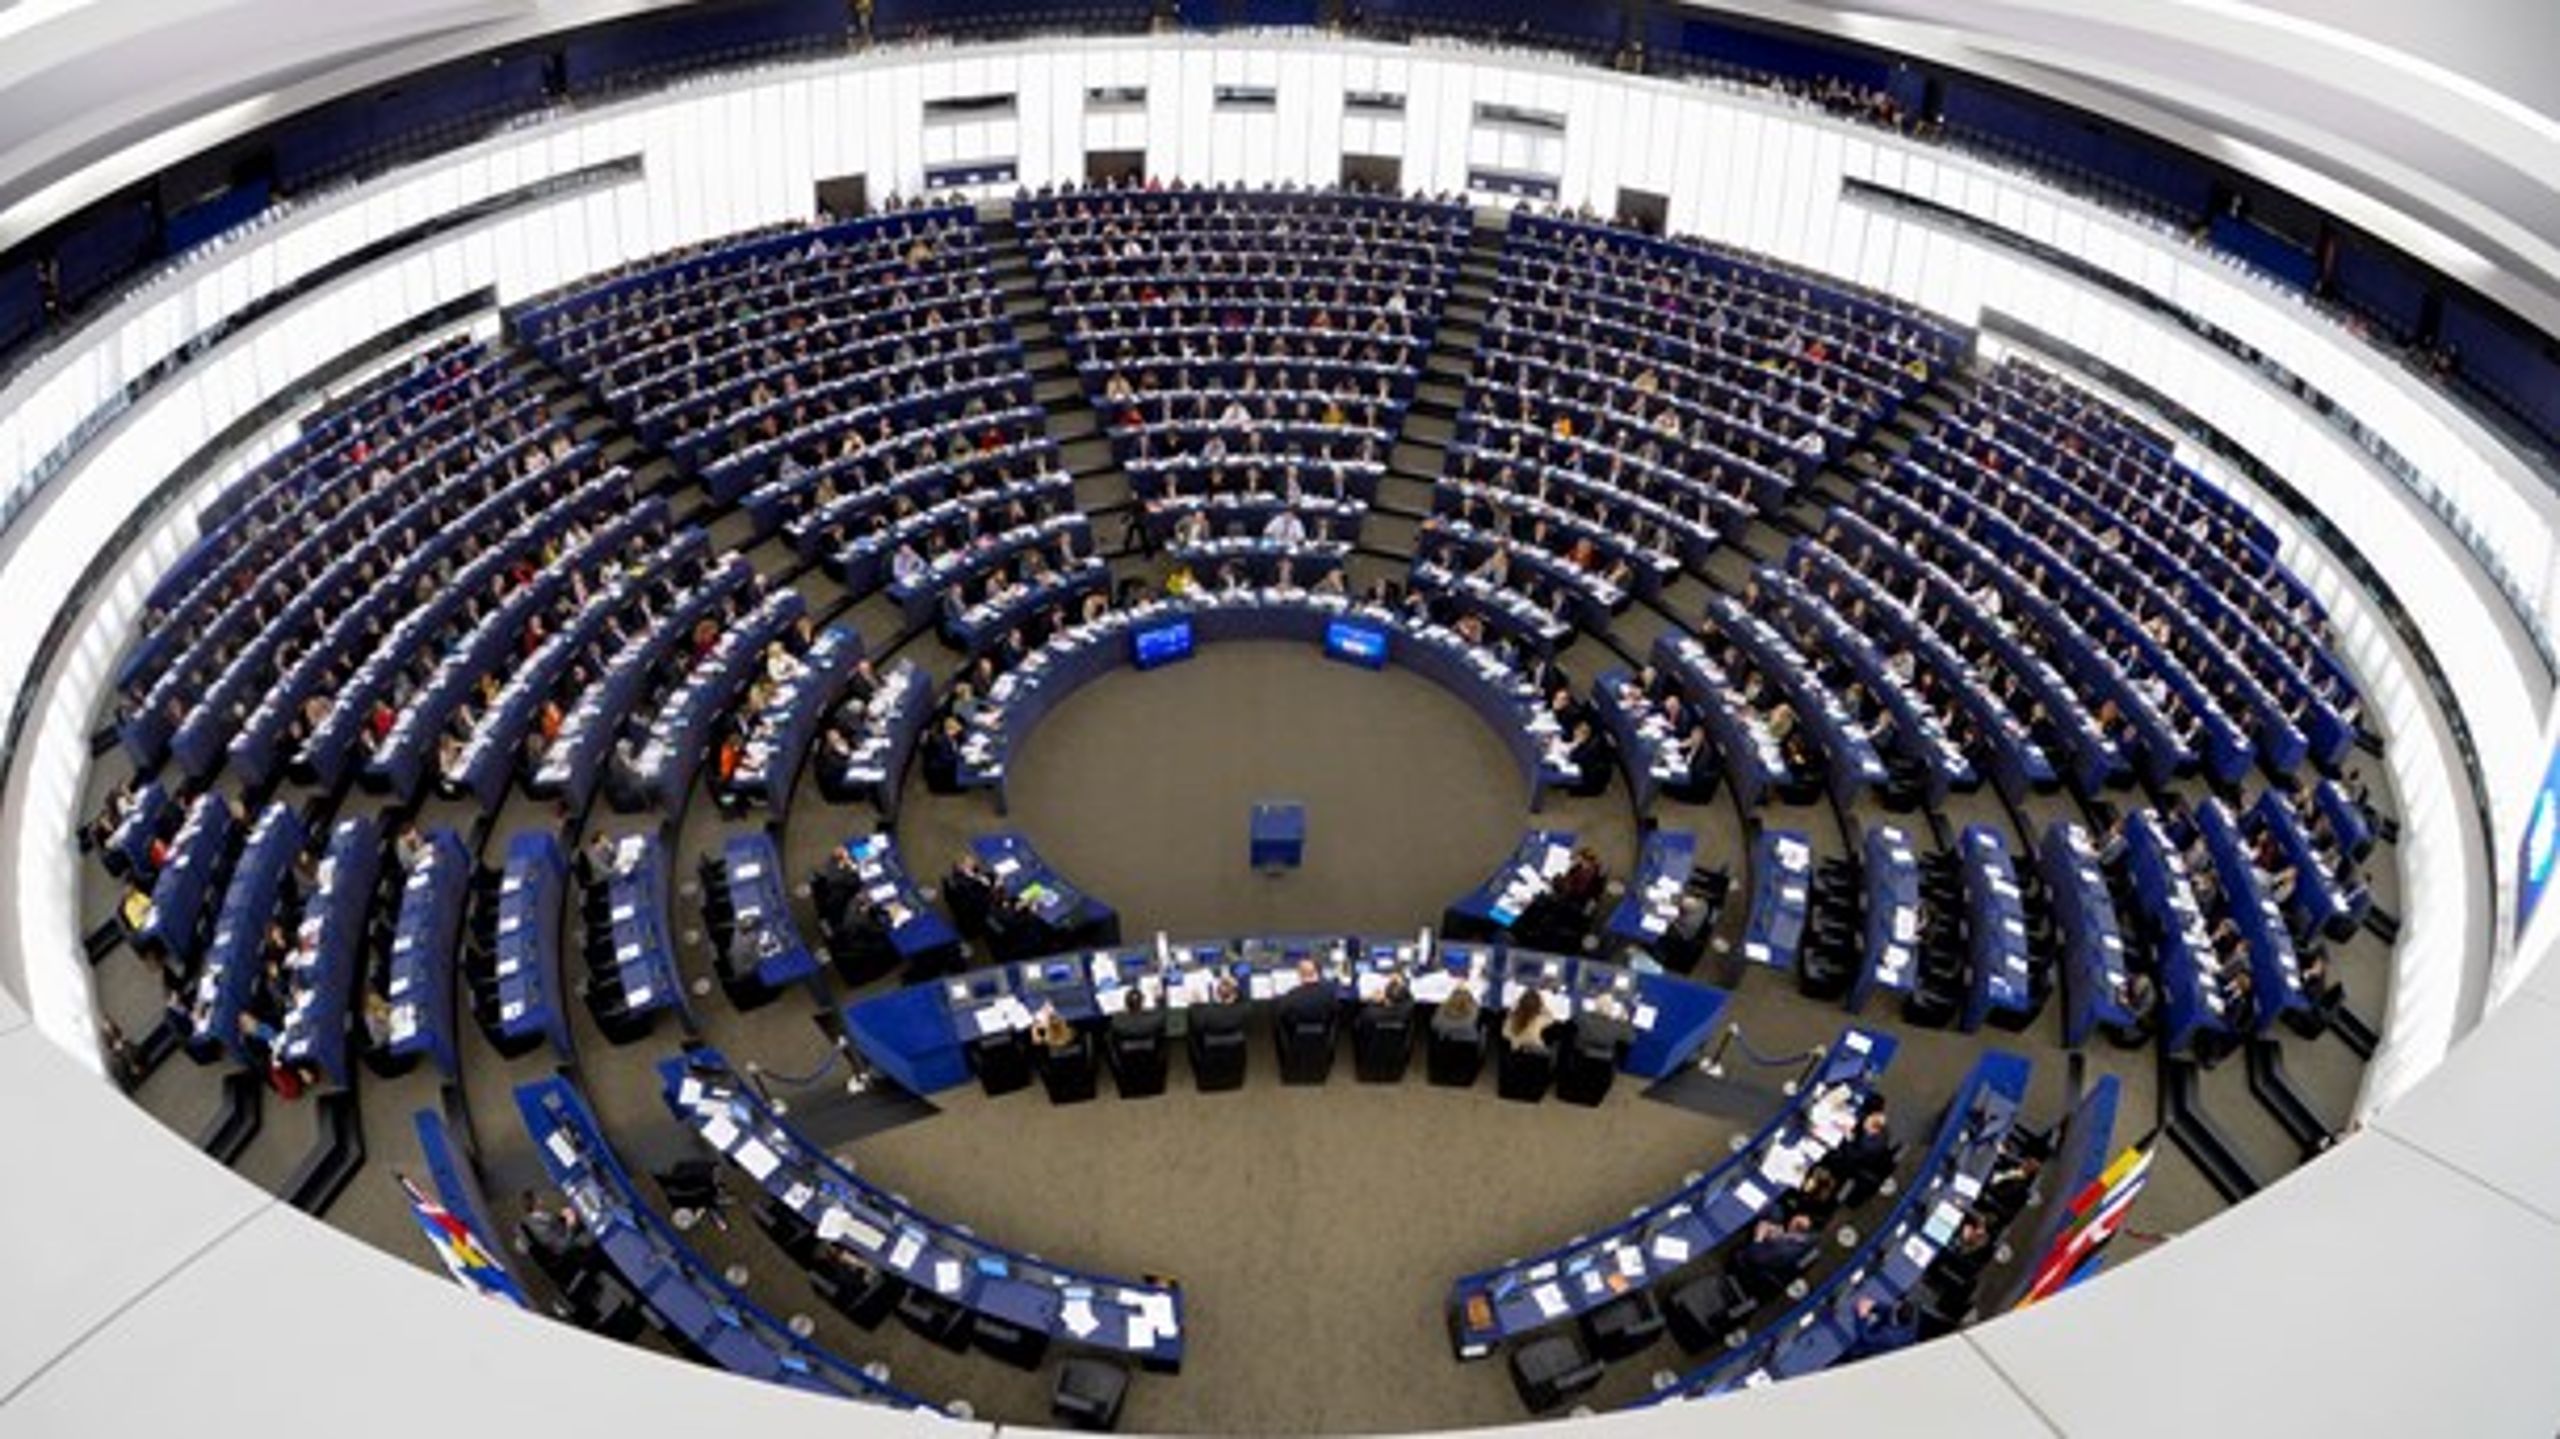 73 pladser i Europa-Parlamentet bliver tomme, når briterne forlader EU. Der er dog ikke enighed om, hvad der skal ske med dem.